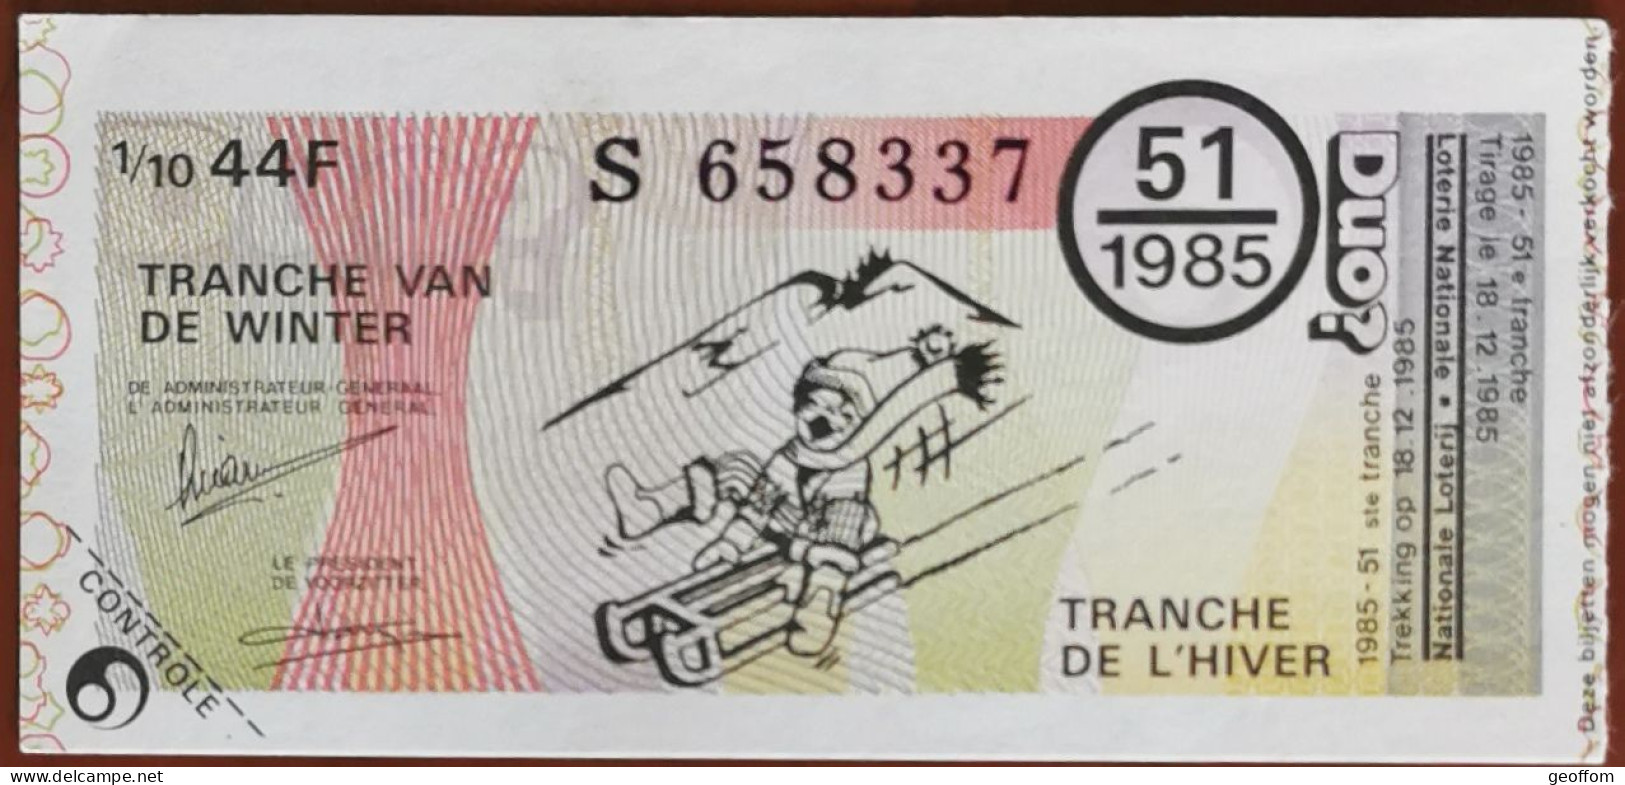 Billet De Loterie Nationale Belgique 1985 51e Tranche De L'Hiver - 18-12-1985 - Biglietti Della Lotteria